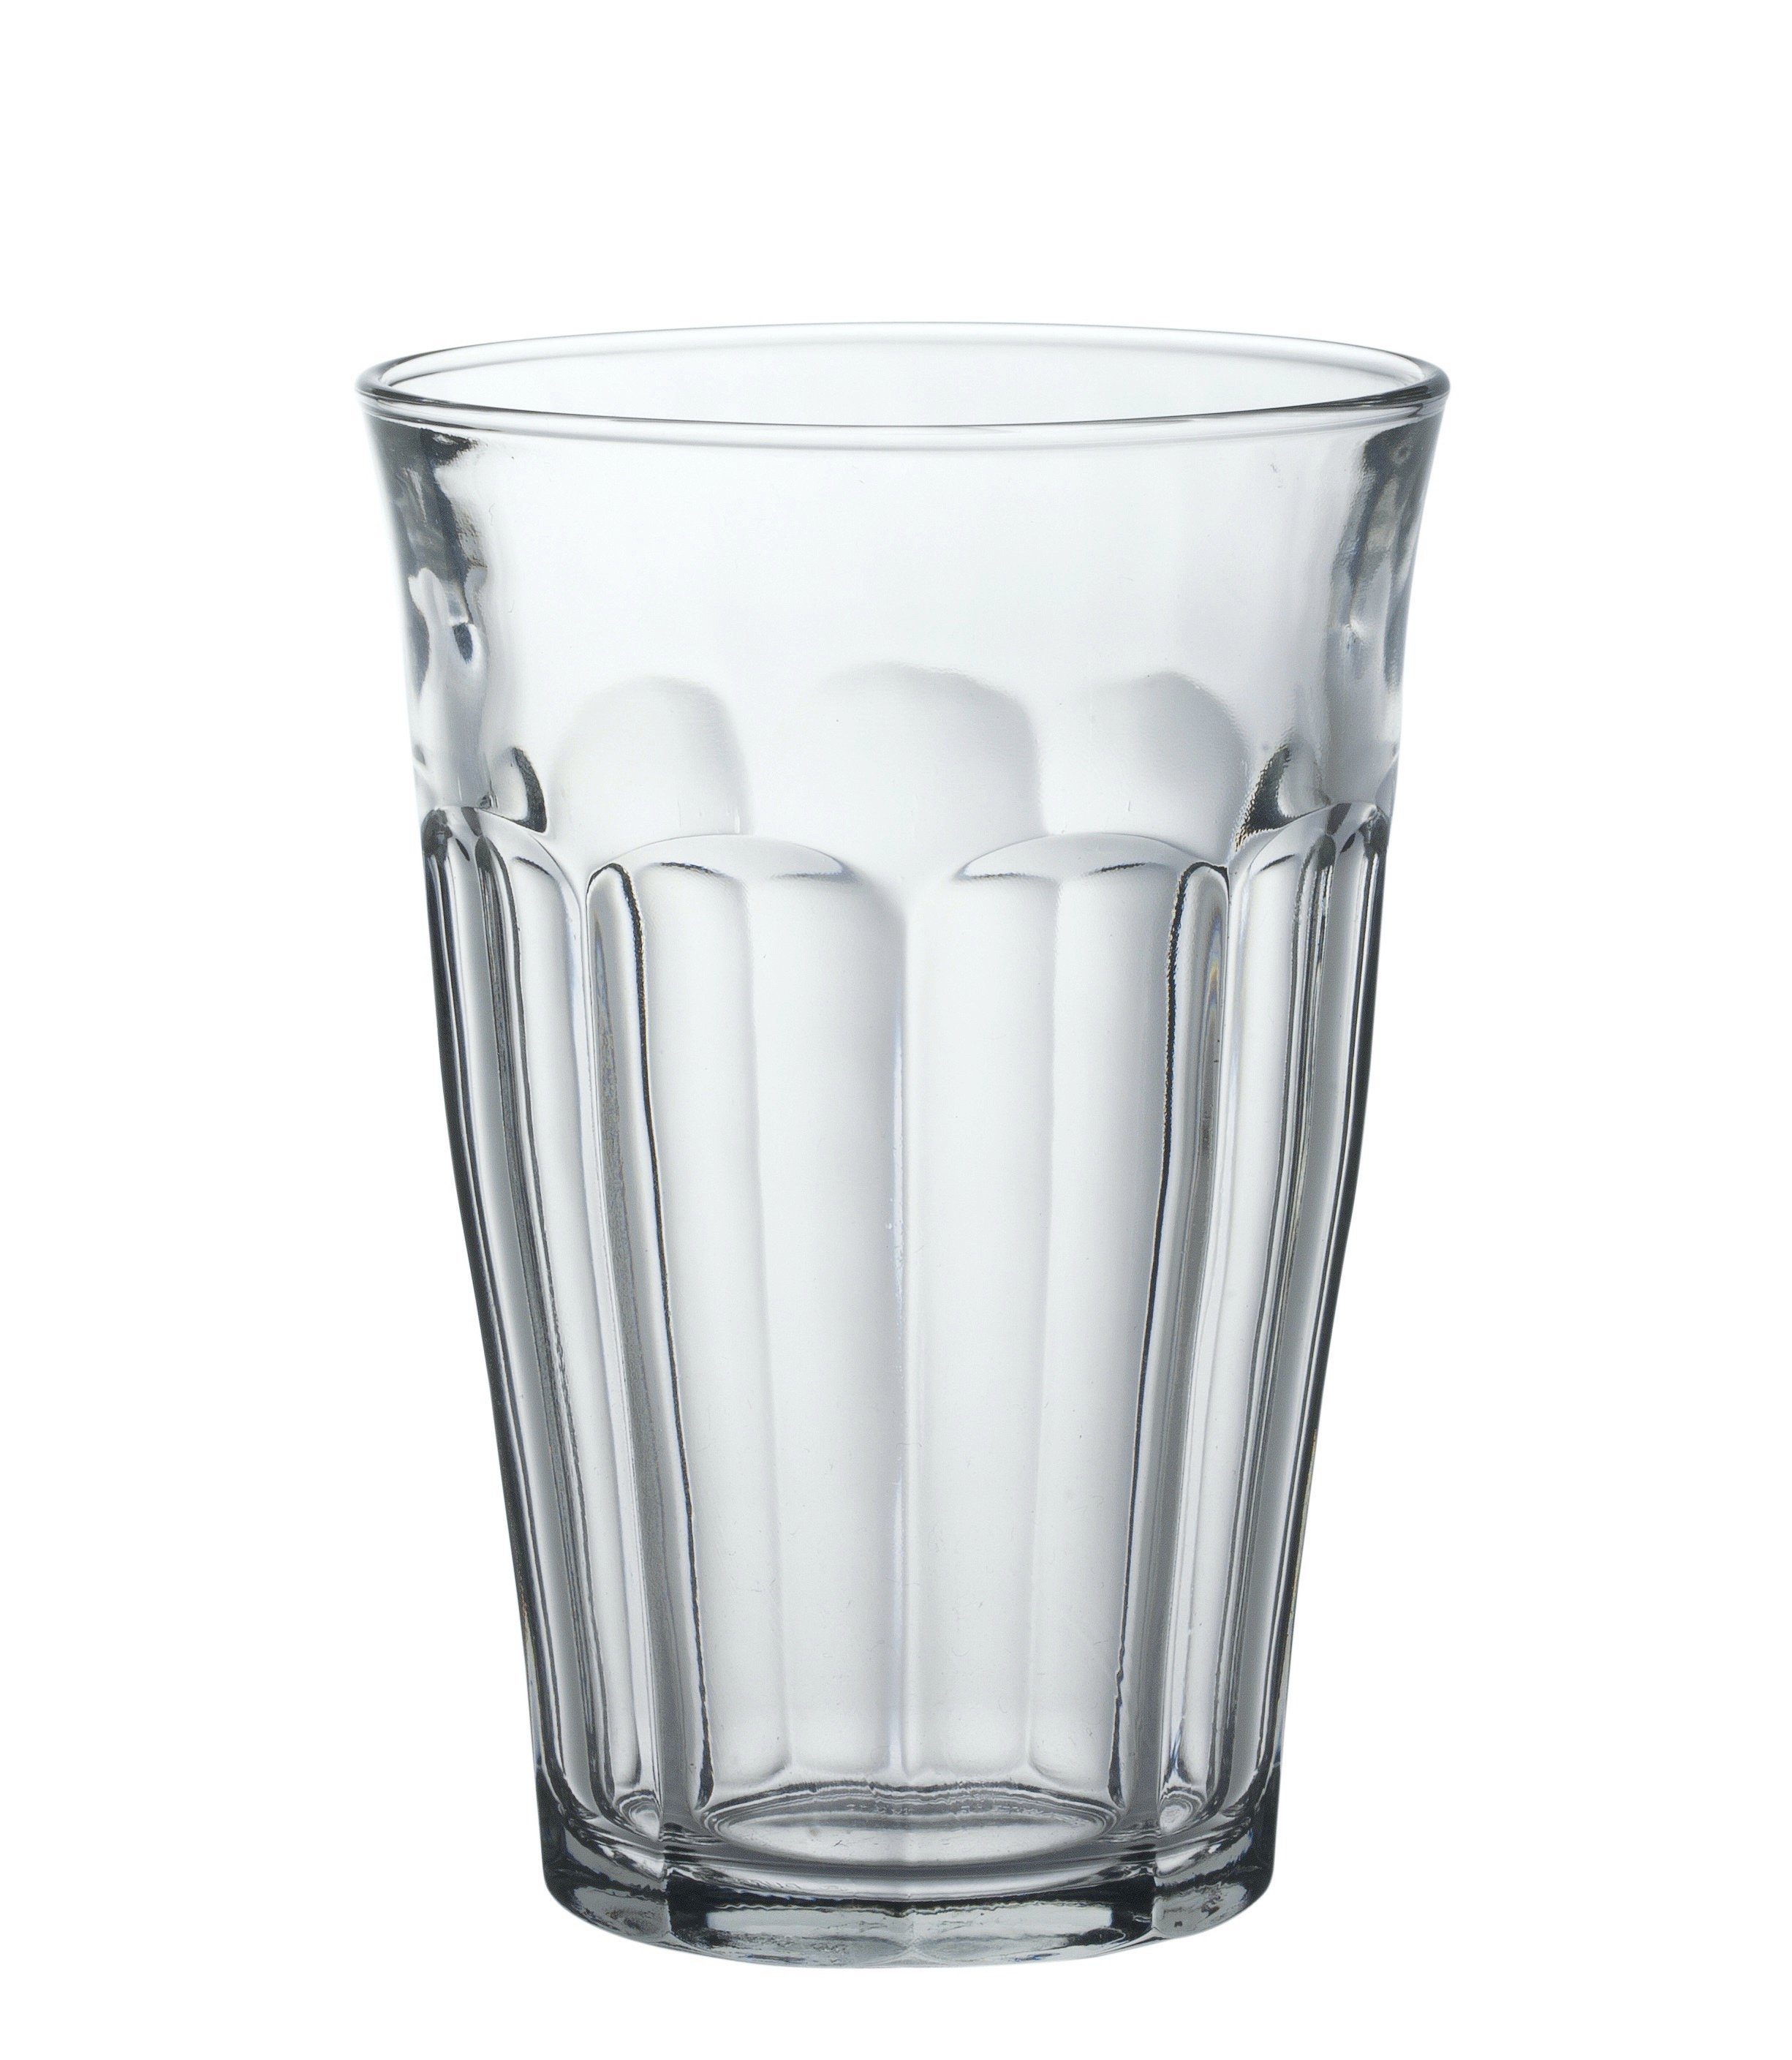 gehärtet, 6 Tumbler Tumbler-Glas Glas Füllstrich gehärtet Transparent 360ml Duralex bei Picardie, 0.3l Trinkglas Glas 03l Stück